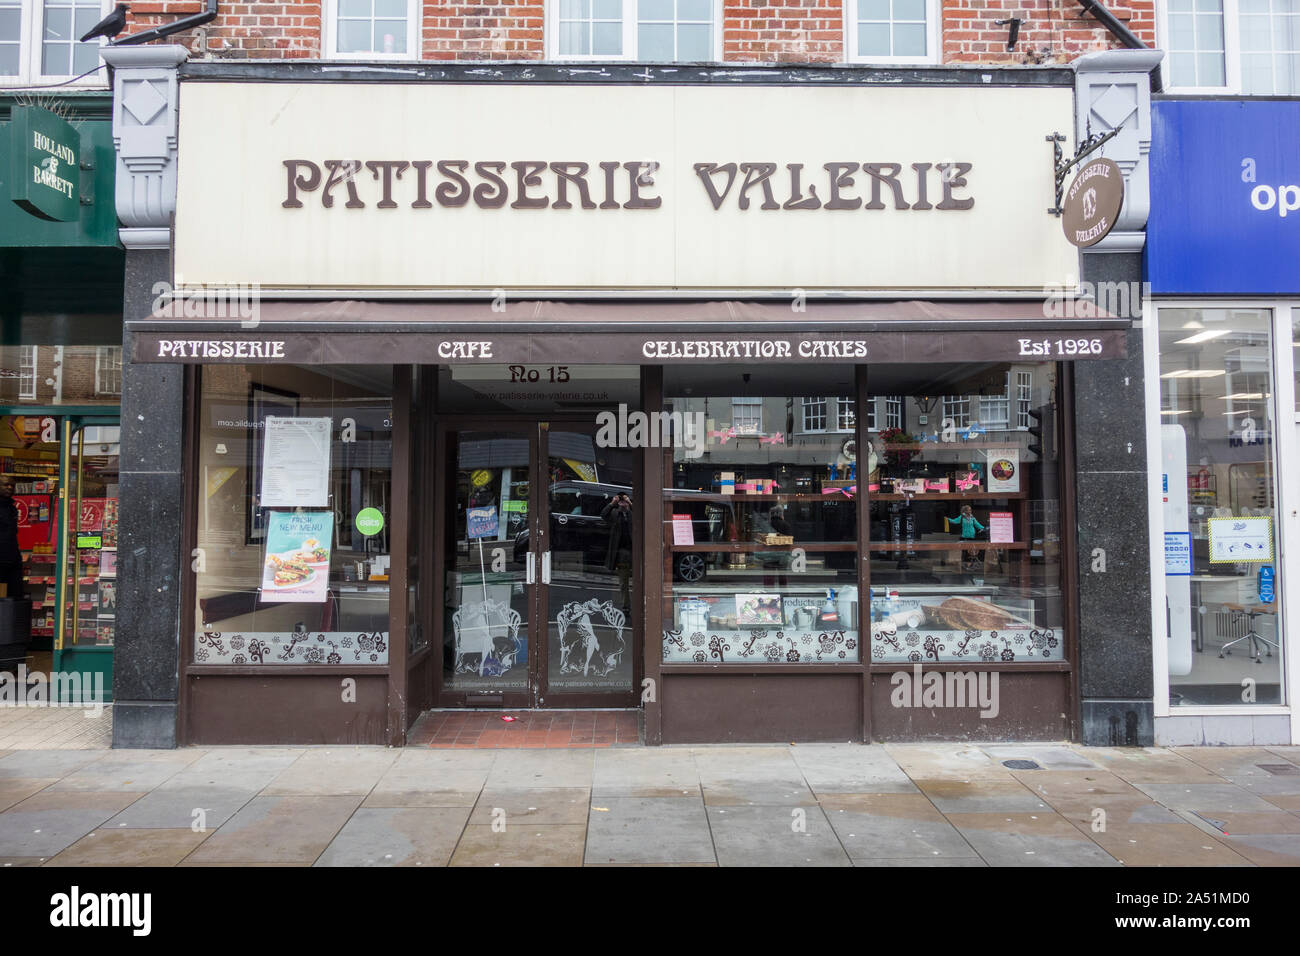 La tienda exterior frente a la ahora cerrada Patisserie Valerie cafe cadena, Twickenham, Londres, Reino Unido. Foto de stock